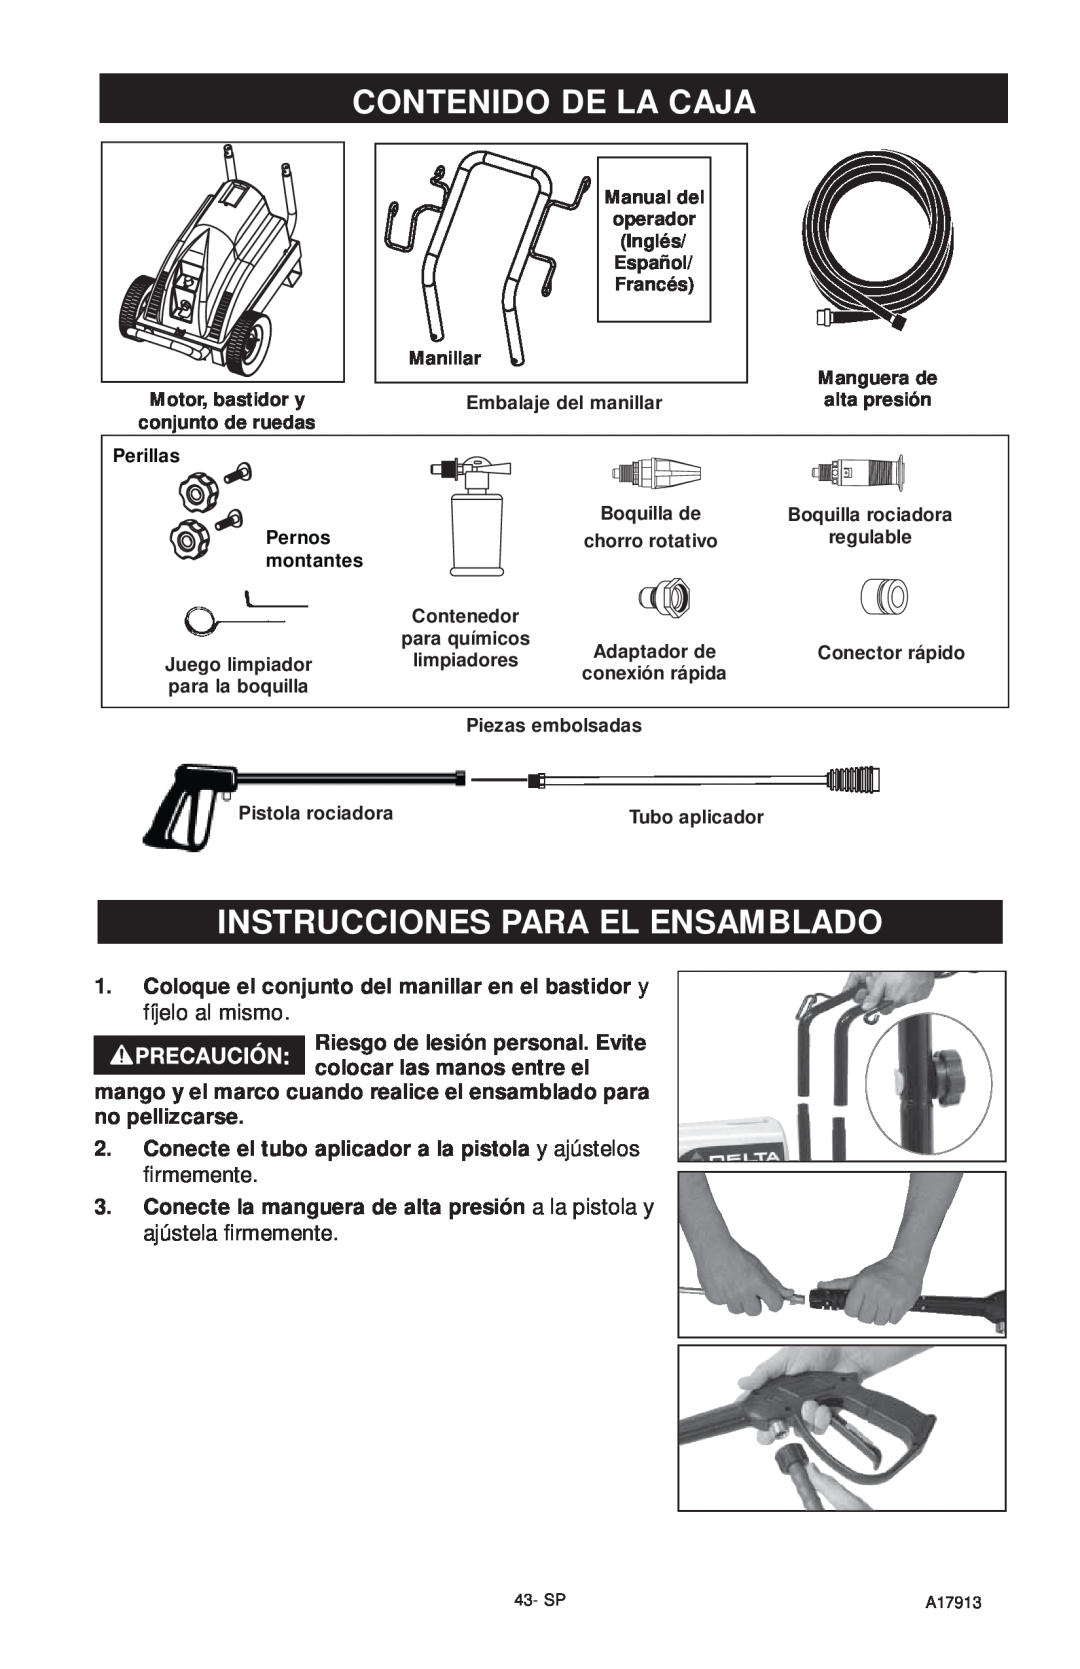 DeVillbiss Air Power Company A17913 Contenido De La Caja, Instrucciones Para El Ensamblado, Manual del, Español, Manillar 